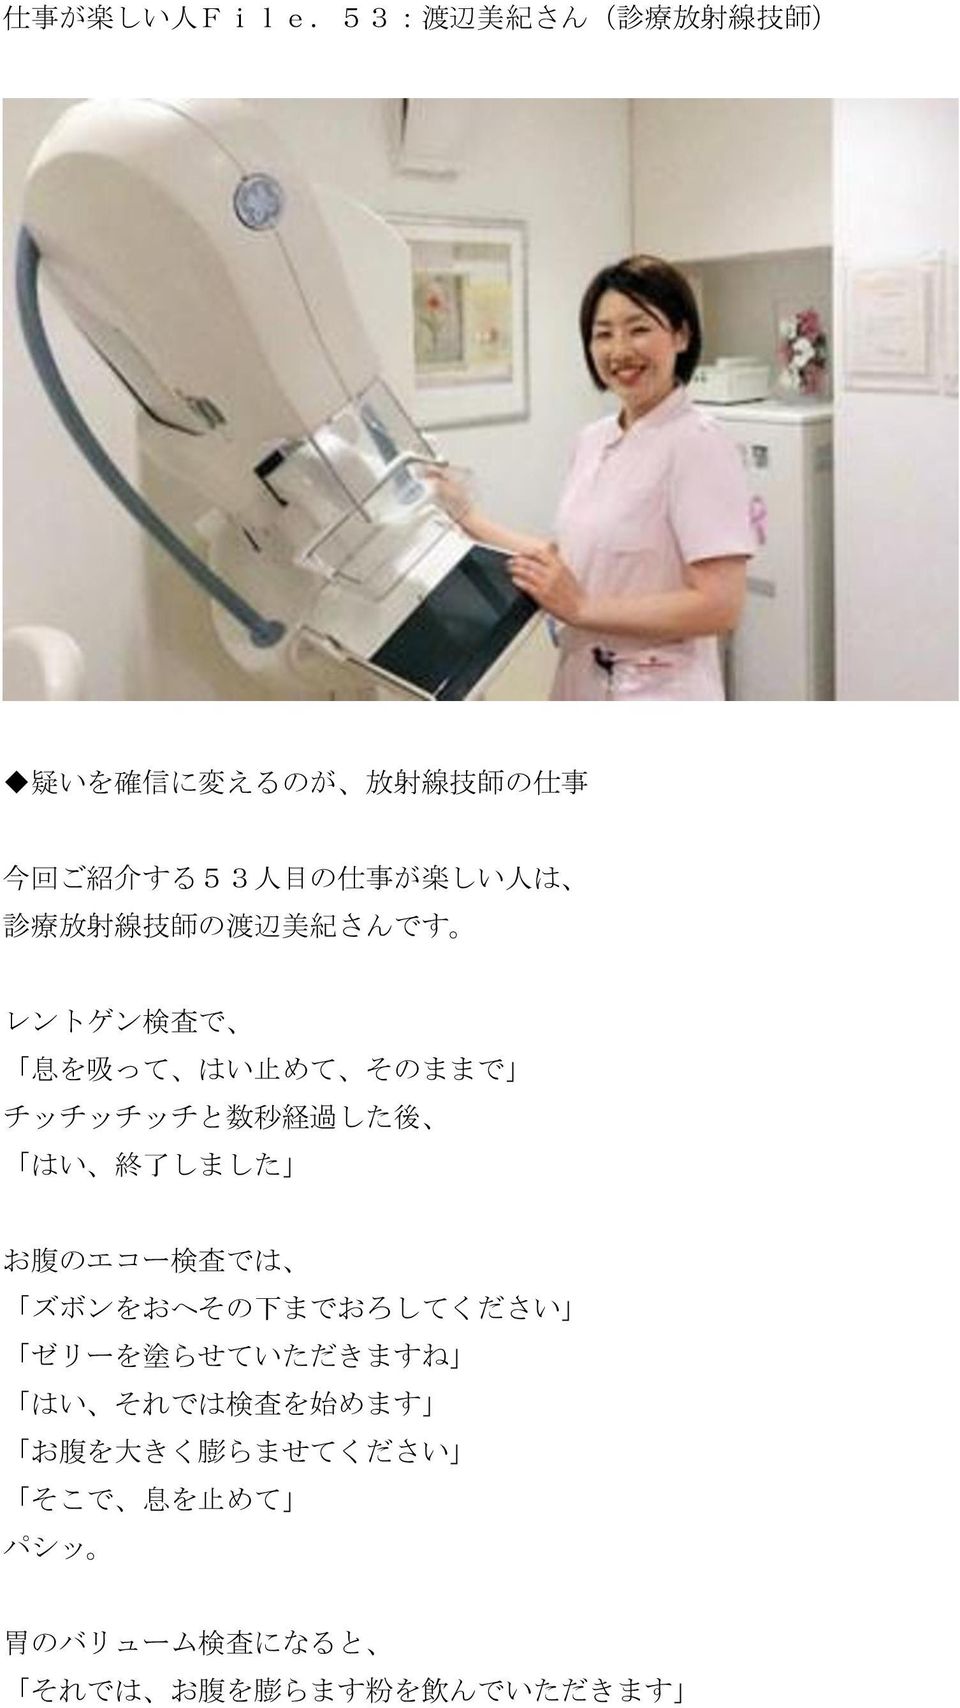 しい 人 は 診 療 放 射 線 技 師 の 渡 辺 美 紀 さんです レントゲン 検 査 で 息 を 吸 って はい 止 めて そのままで チッチッチッチと 数 秒 経 過 した 後 はい